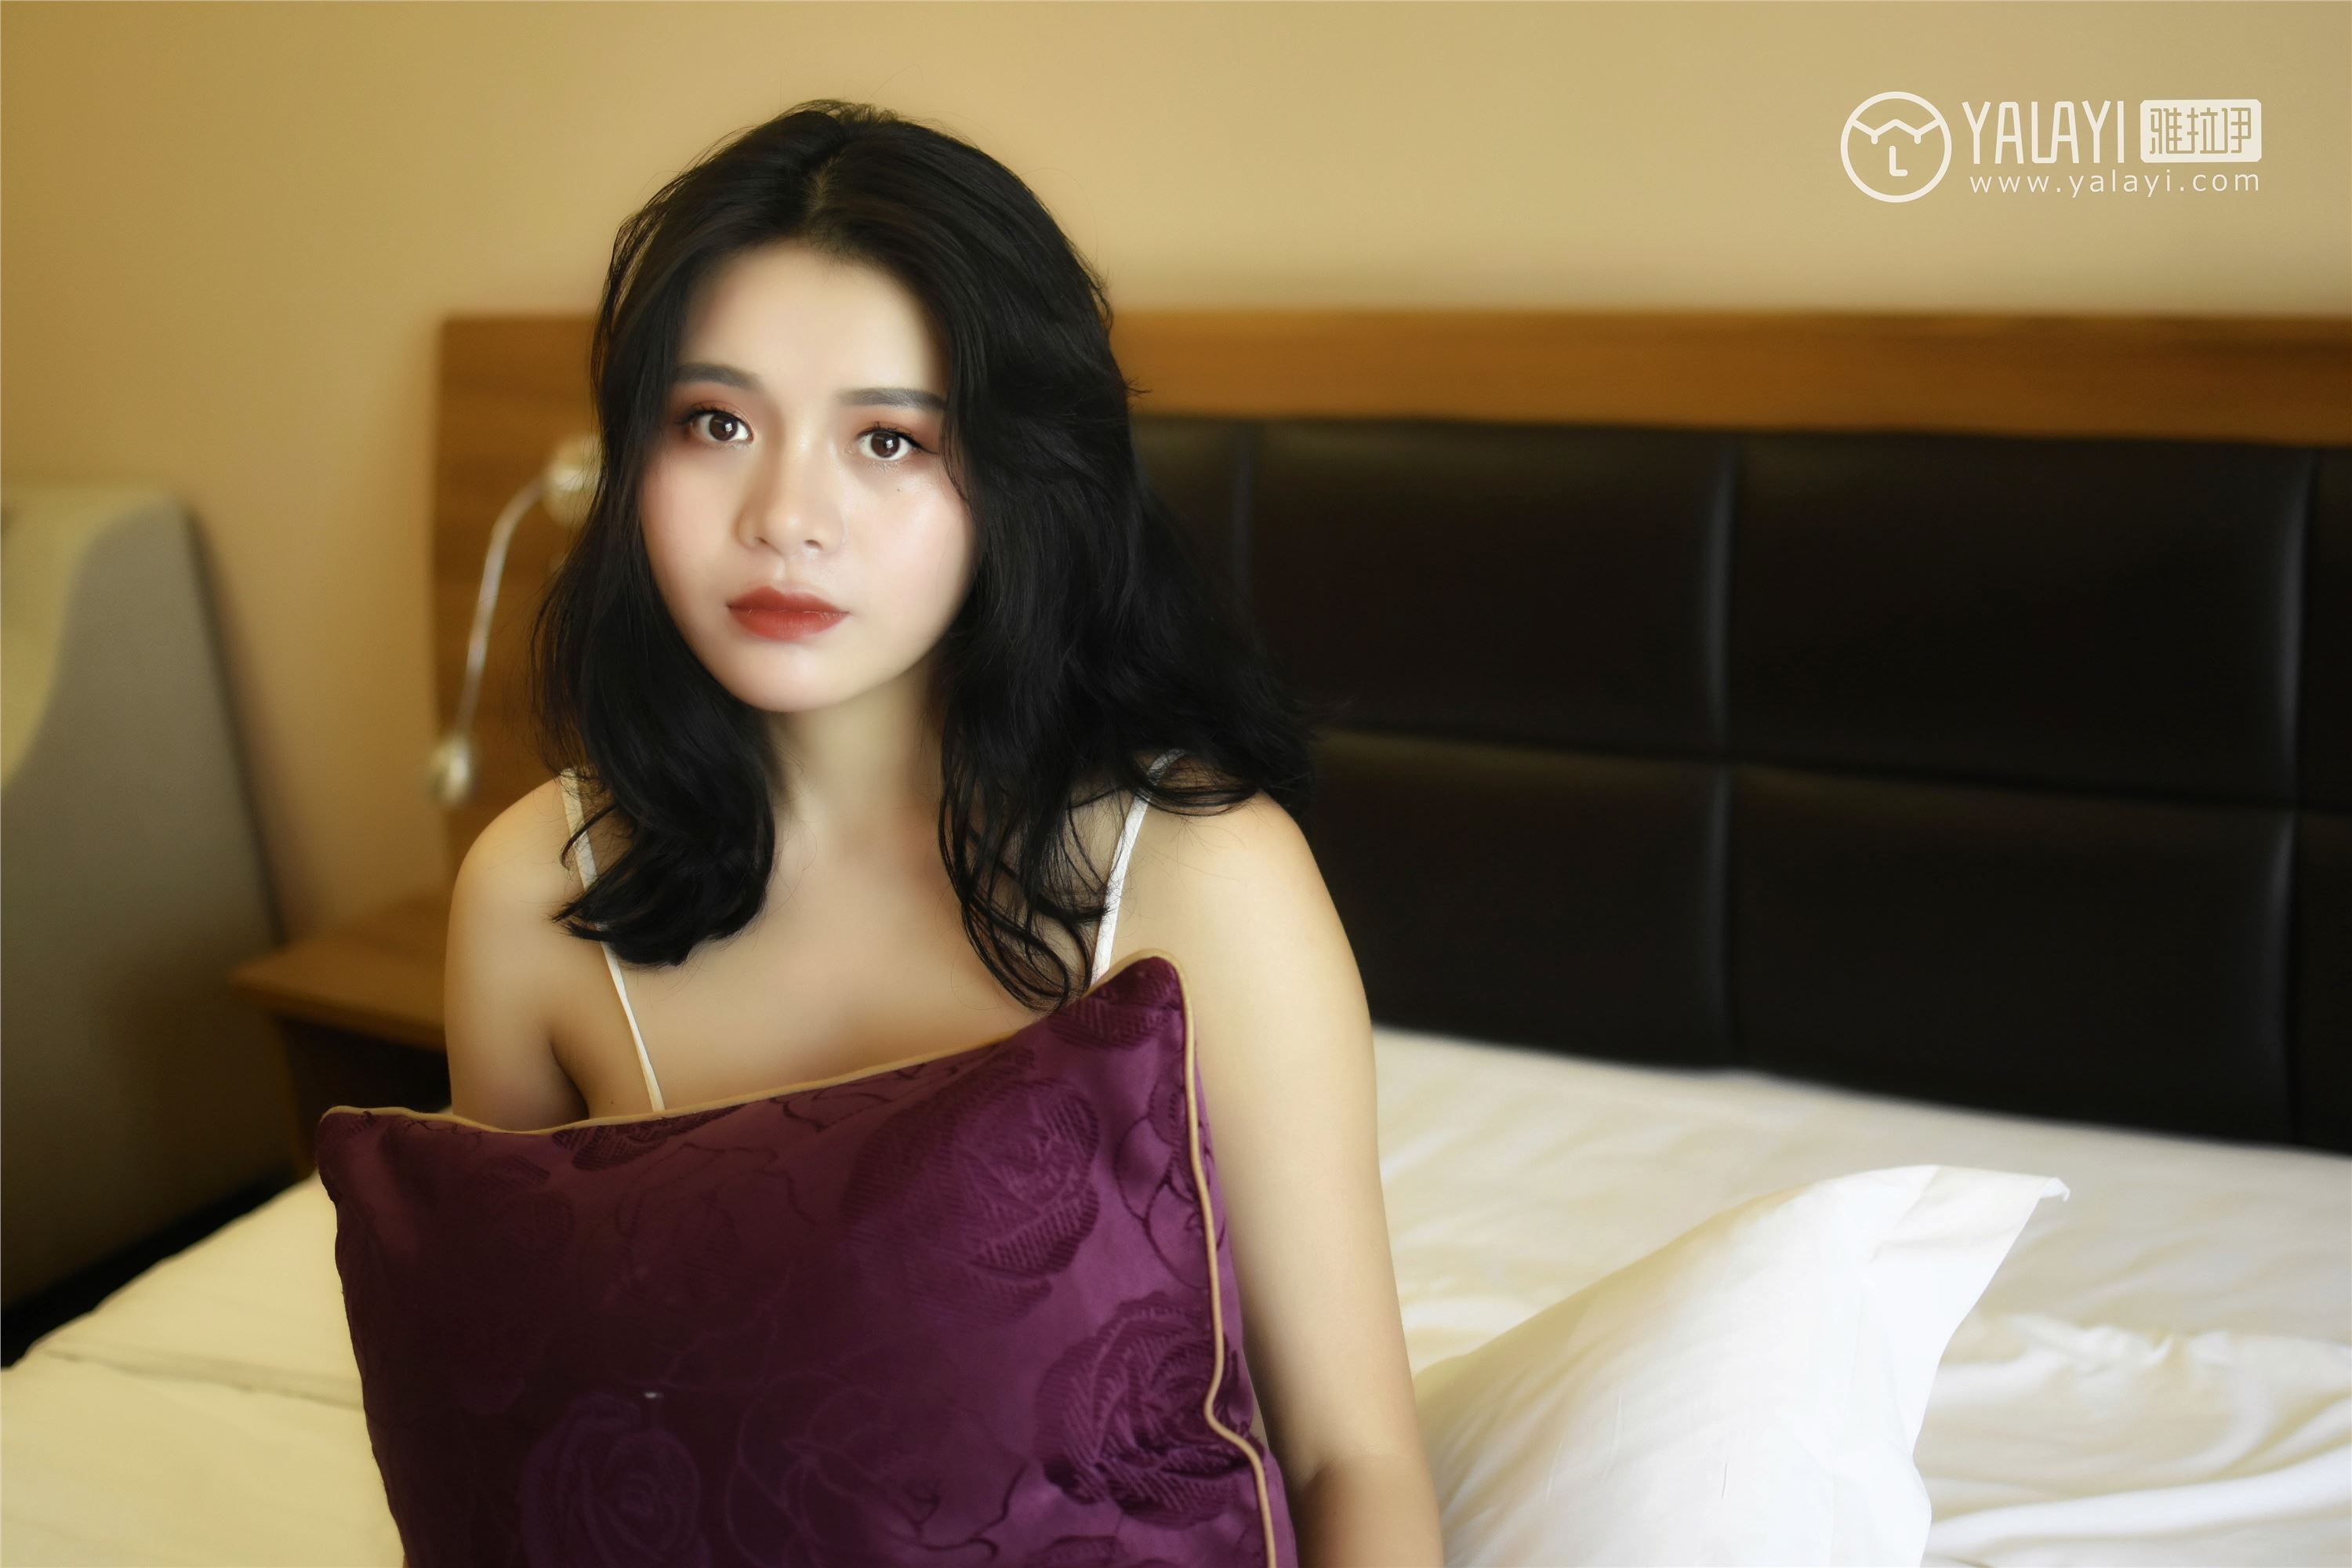 [yalayi yalayi] October 15, 2018 no.011 Xinrui's pajamas charm Mi Xinrui